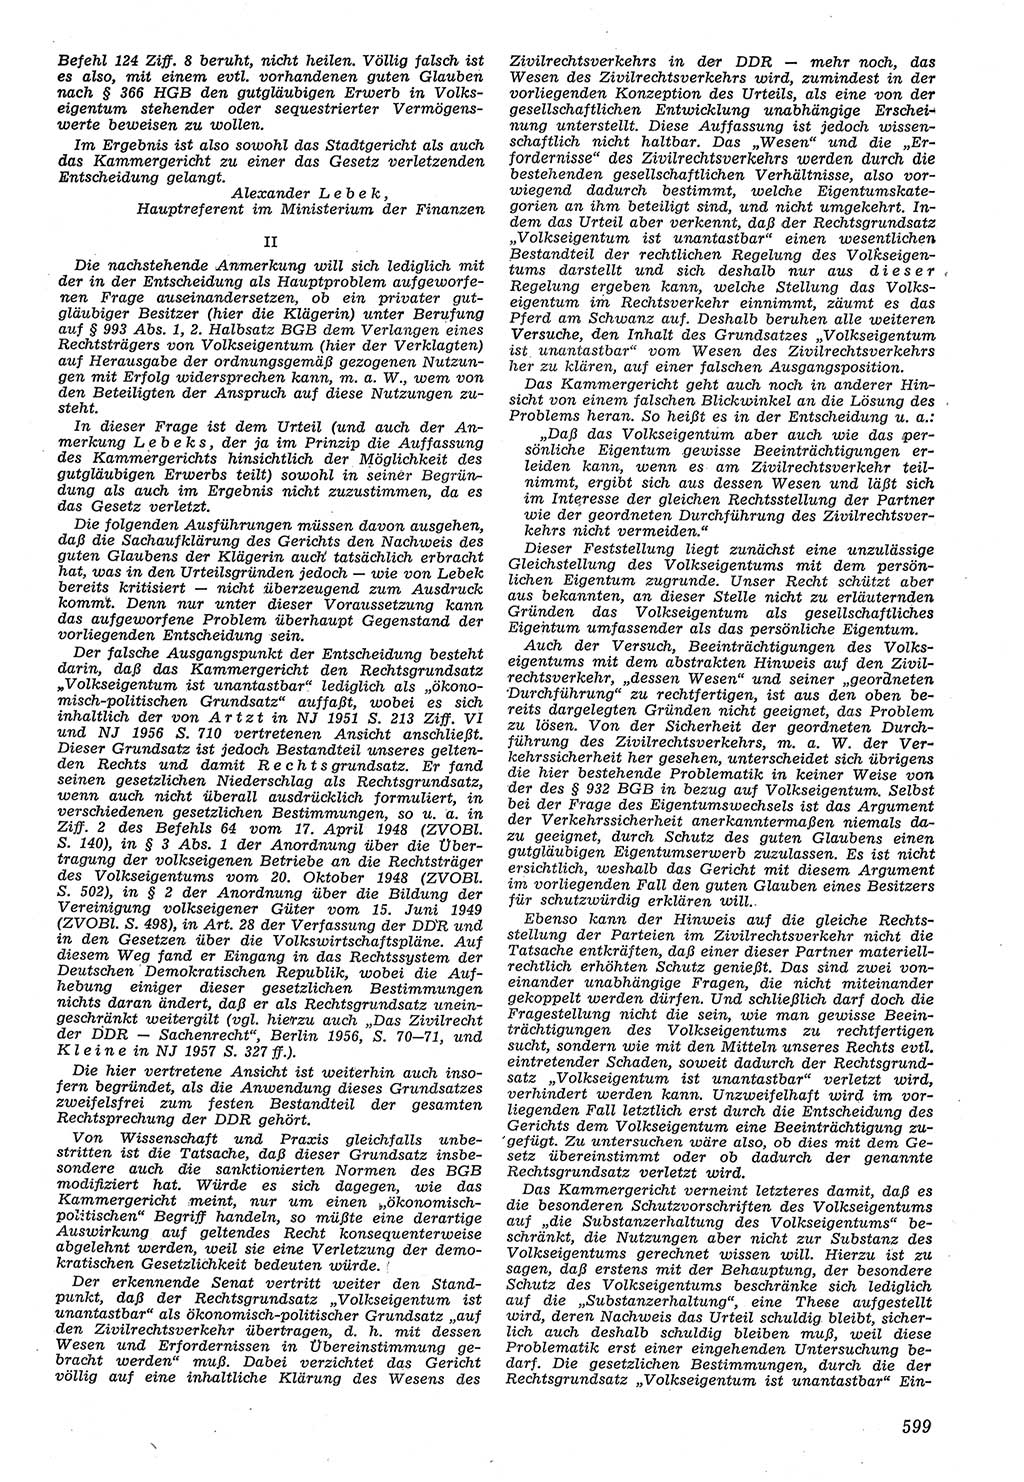 Neue Justiz (NJ), Zeitschrift für Recht und Rechtswissenschaft [Deutsche Demokratische Republik (DDR)], 11. Jahrgang 1957, Seite 599 (NJ DDR 1957, S. 599)